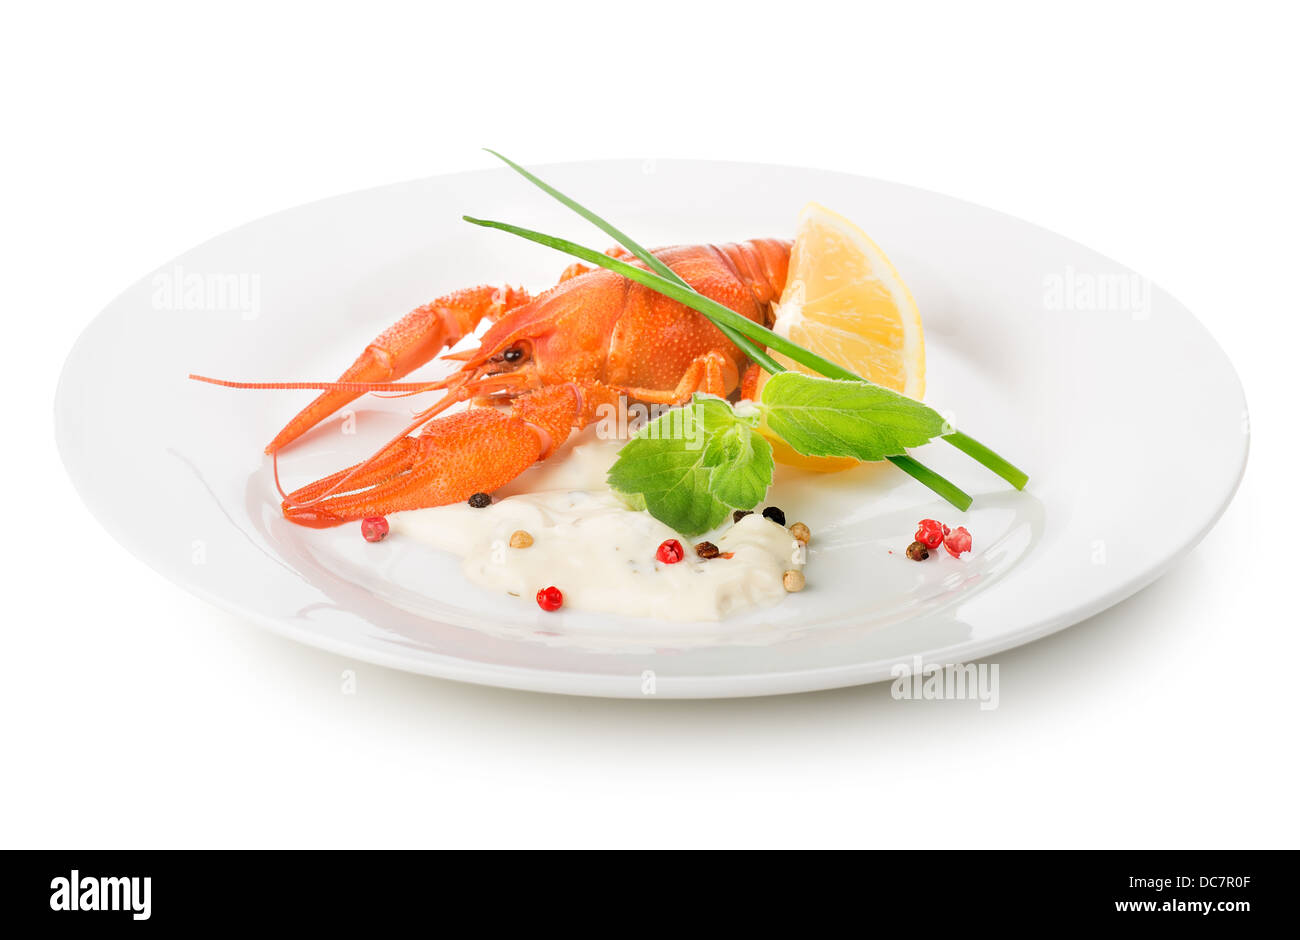 Le homard sur une plaque blanche isolé sur fond blanc Banque D'Images